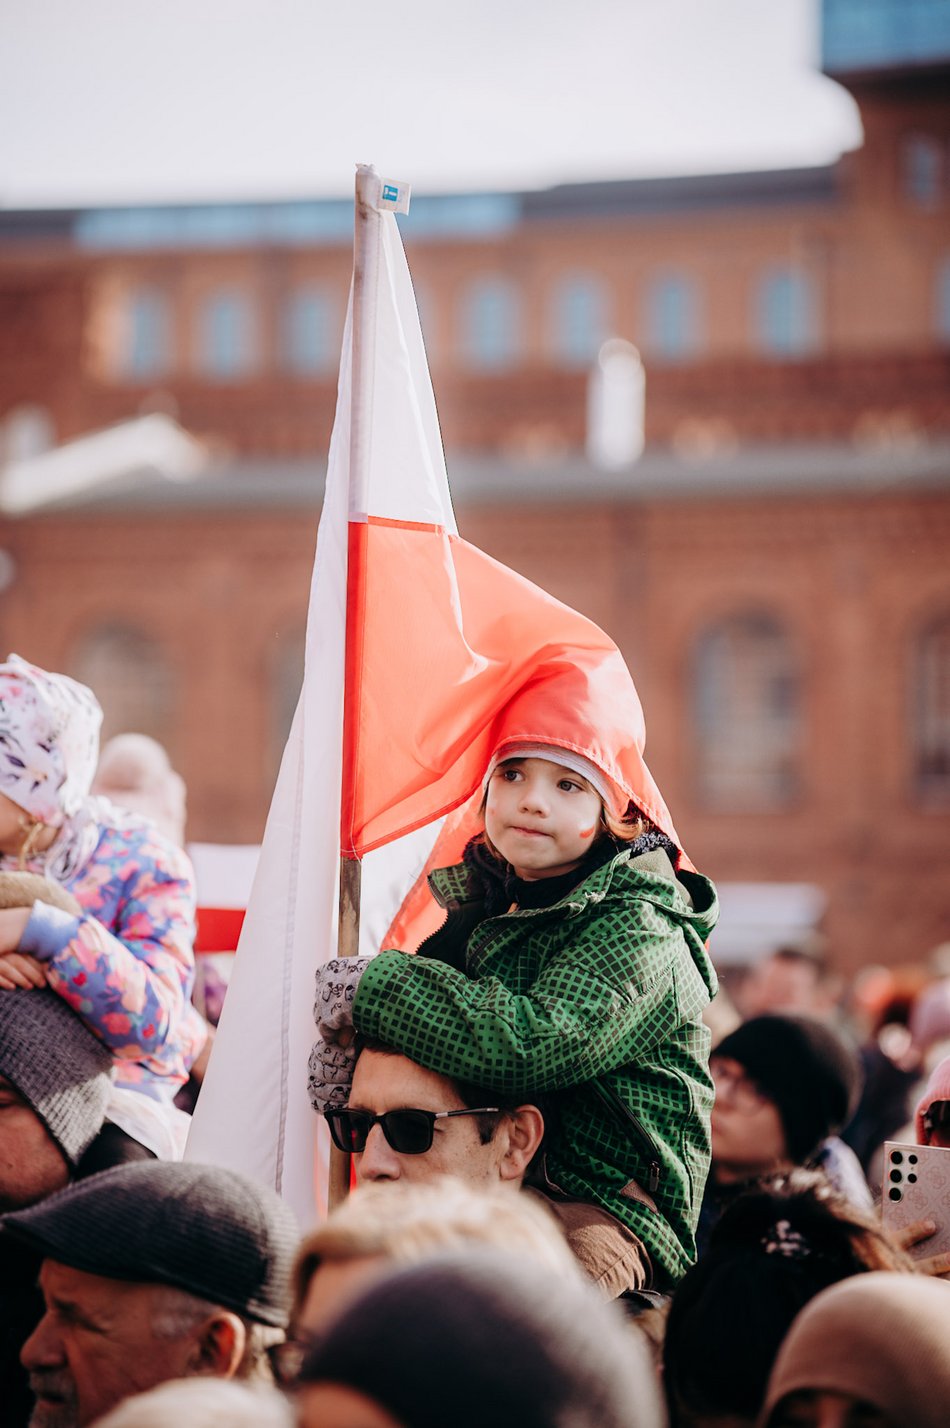 Święto Niepodległości w Łodzi